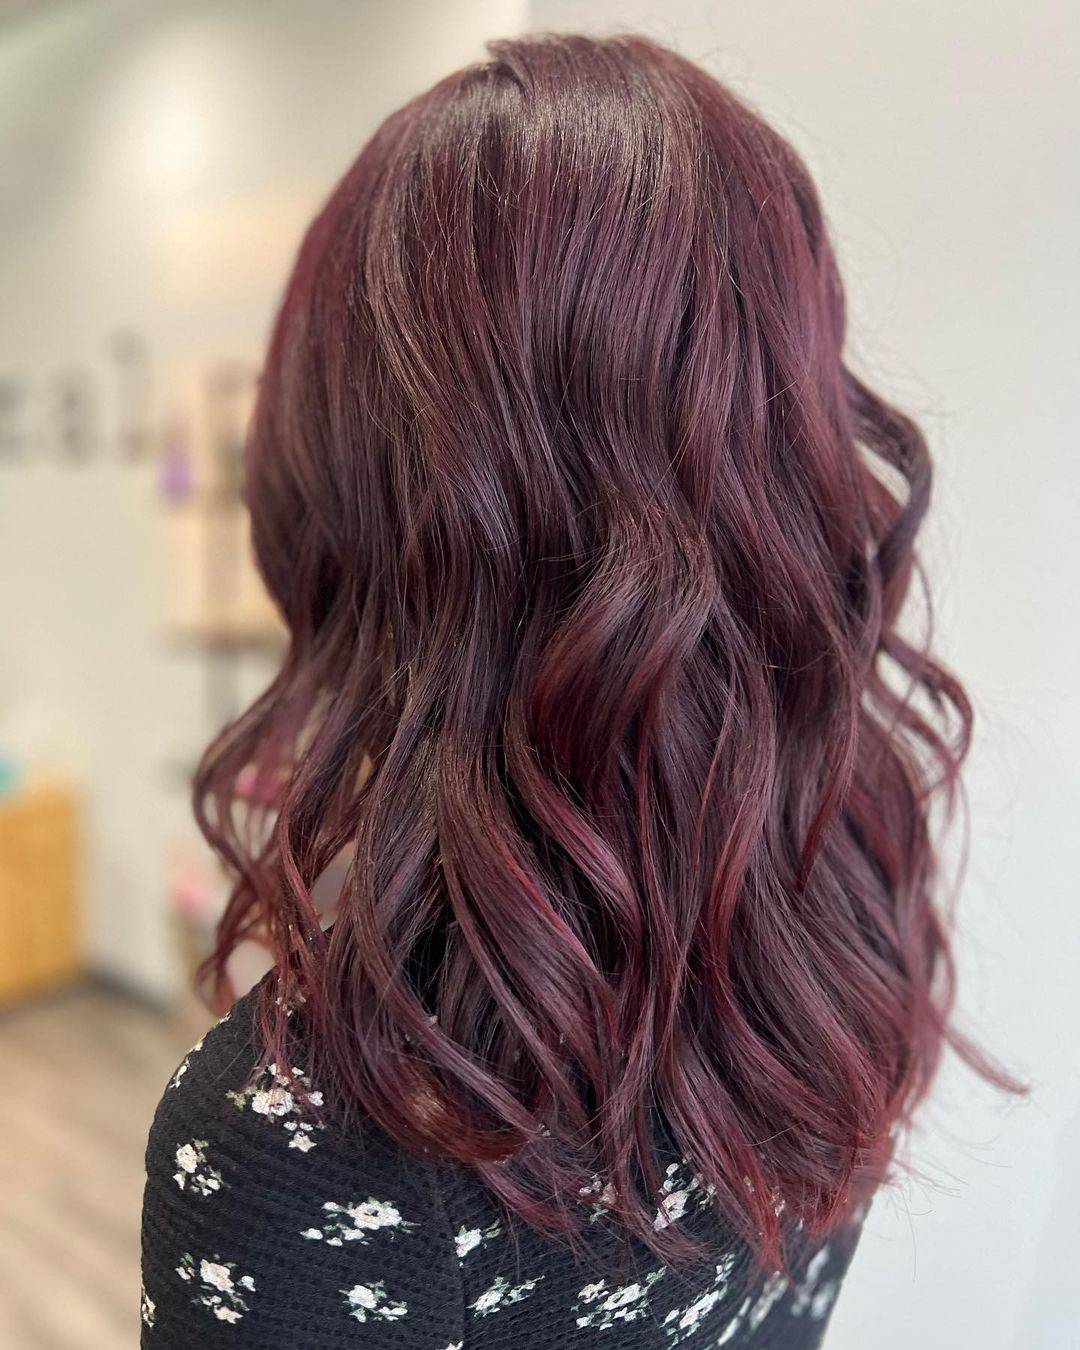 Burgundy hair color 341 burgundy hair color | burgundy hair color for women | burgundy hair color highlights Burgundy Hair Color